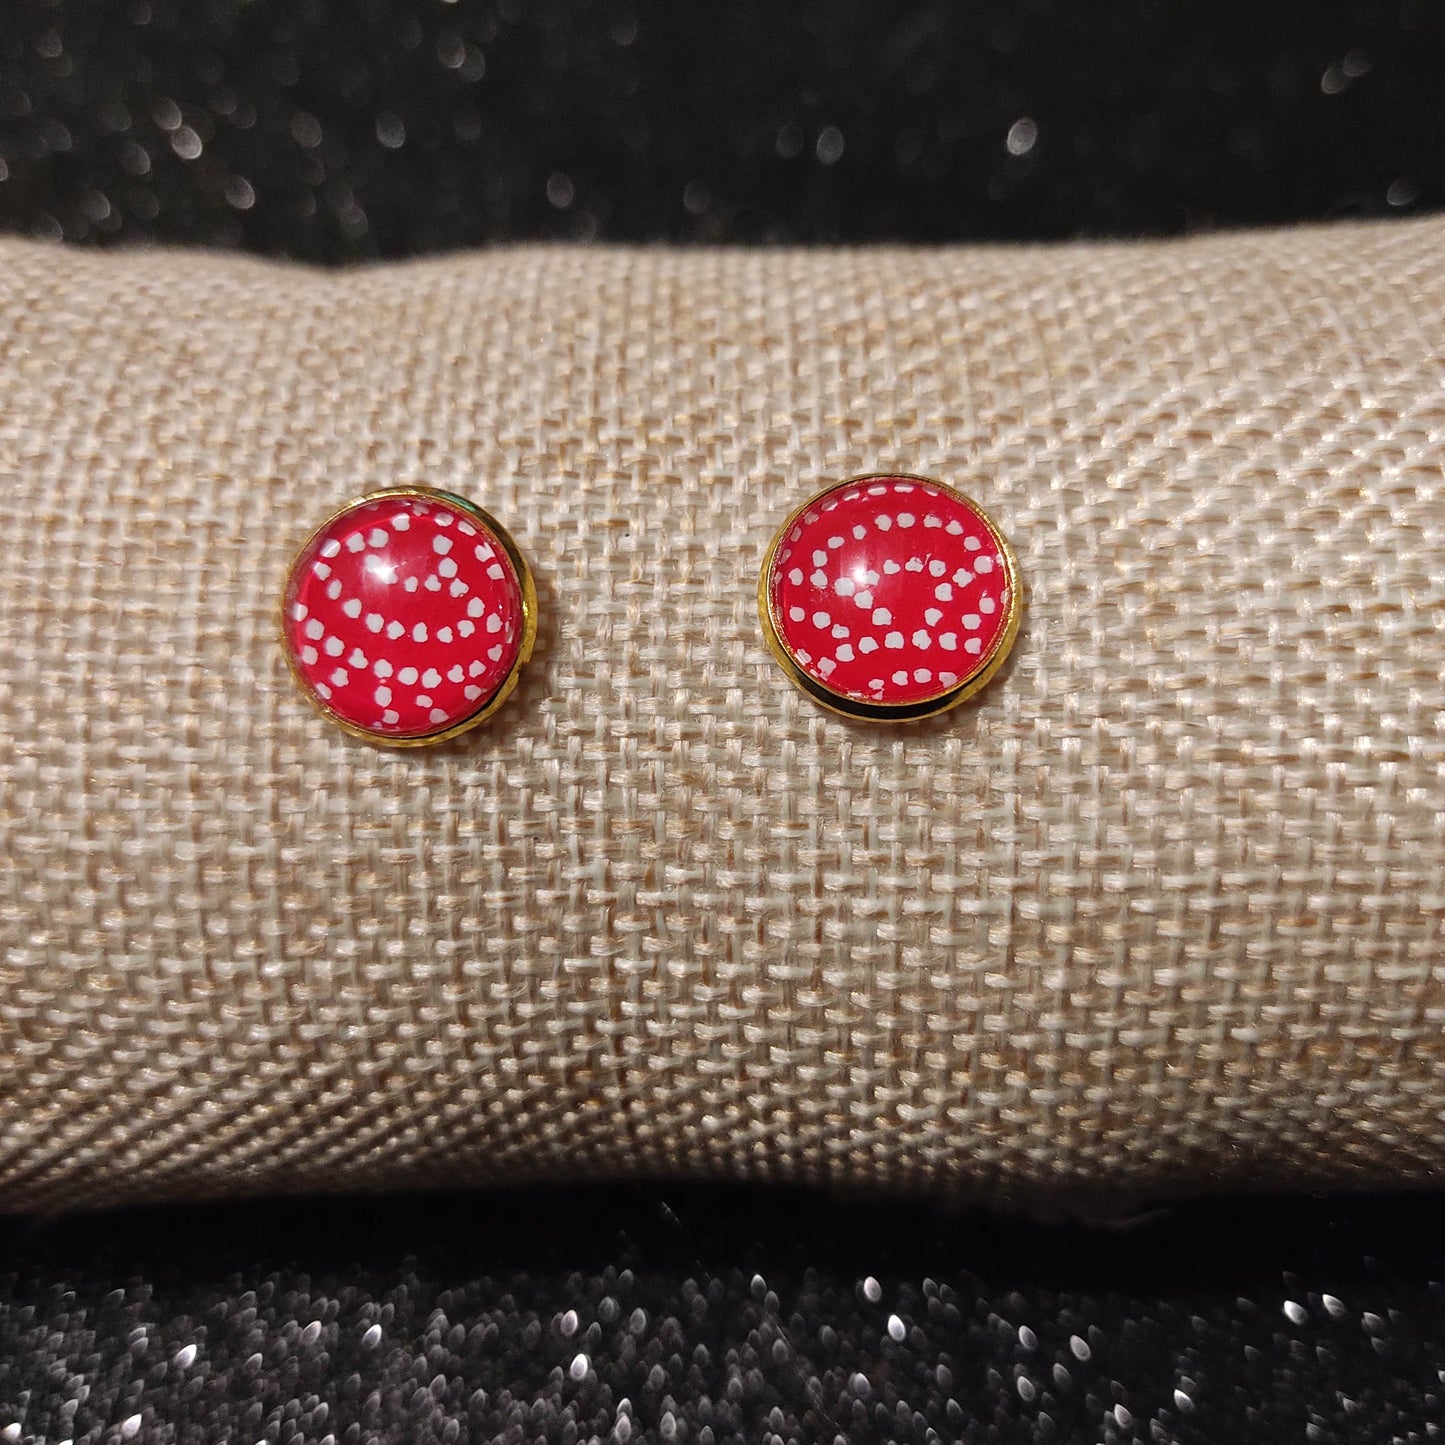 Boucles d'oreilles Puces 12mm - Acier inoxydable doré - Papier japonais pois blanc (arc), fond rouge